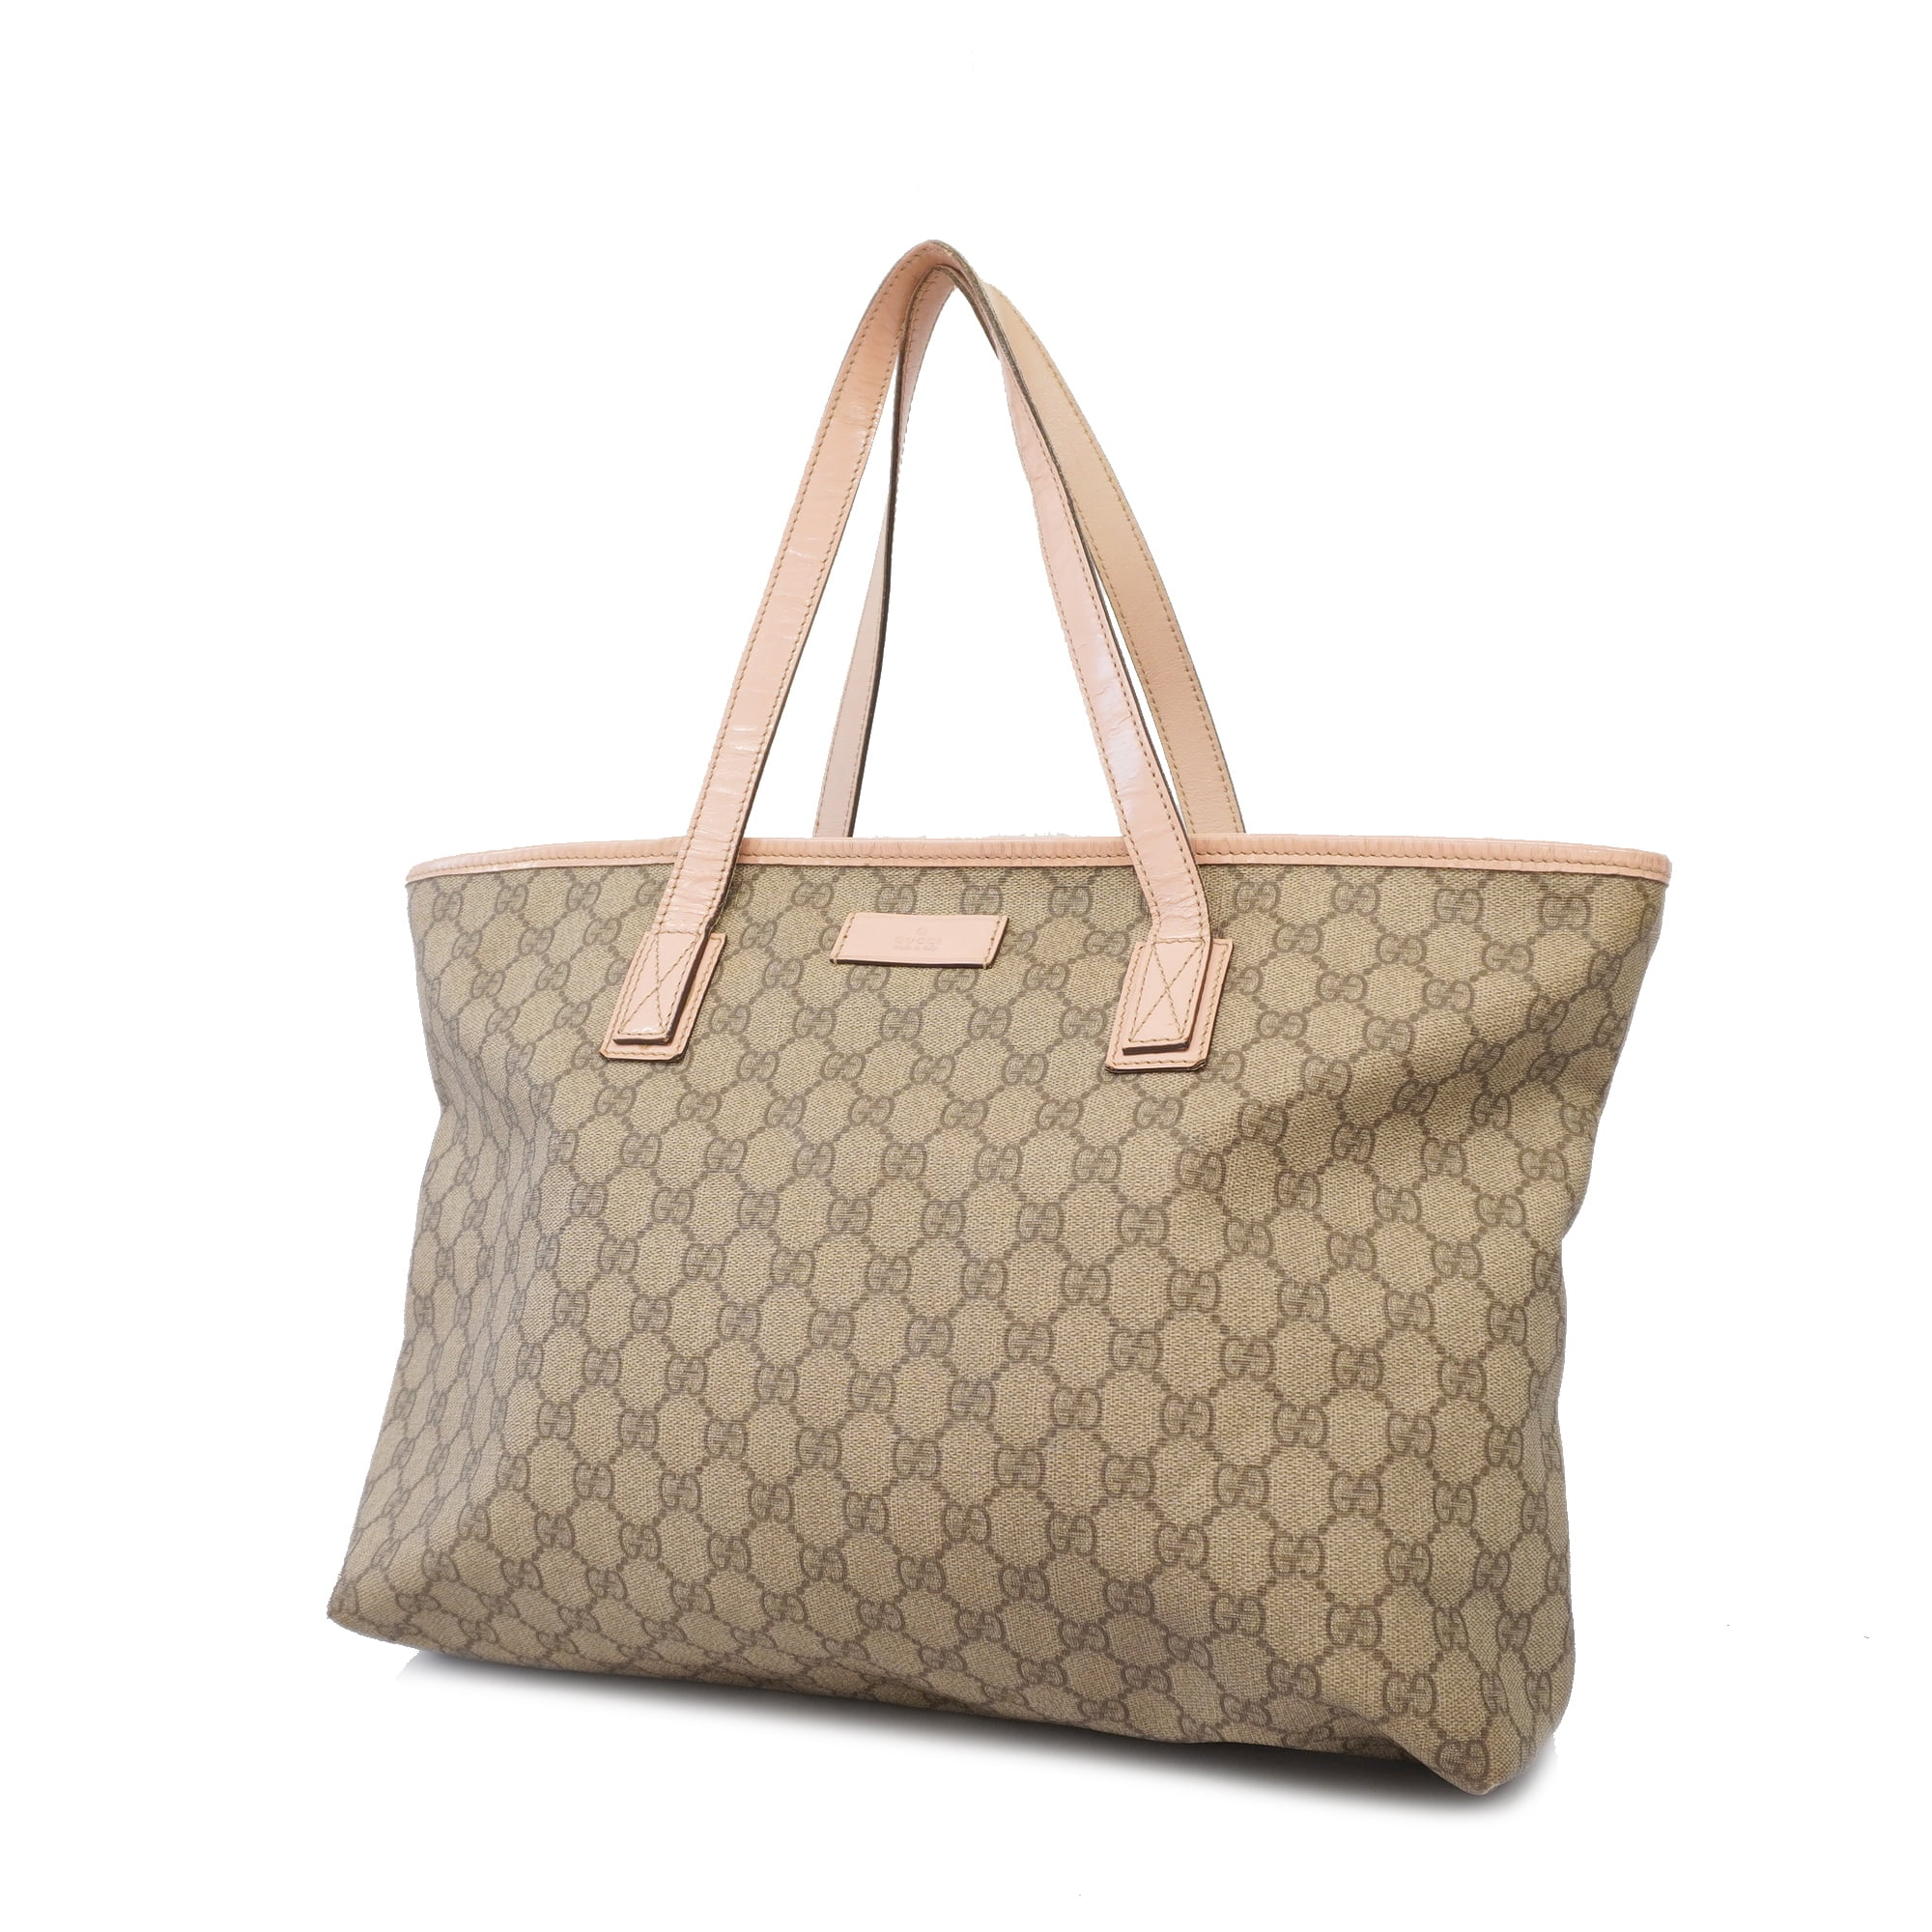 Used Auth Gucci Tote Bag 211137 Women's GG Supreme Handbag,Tote